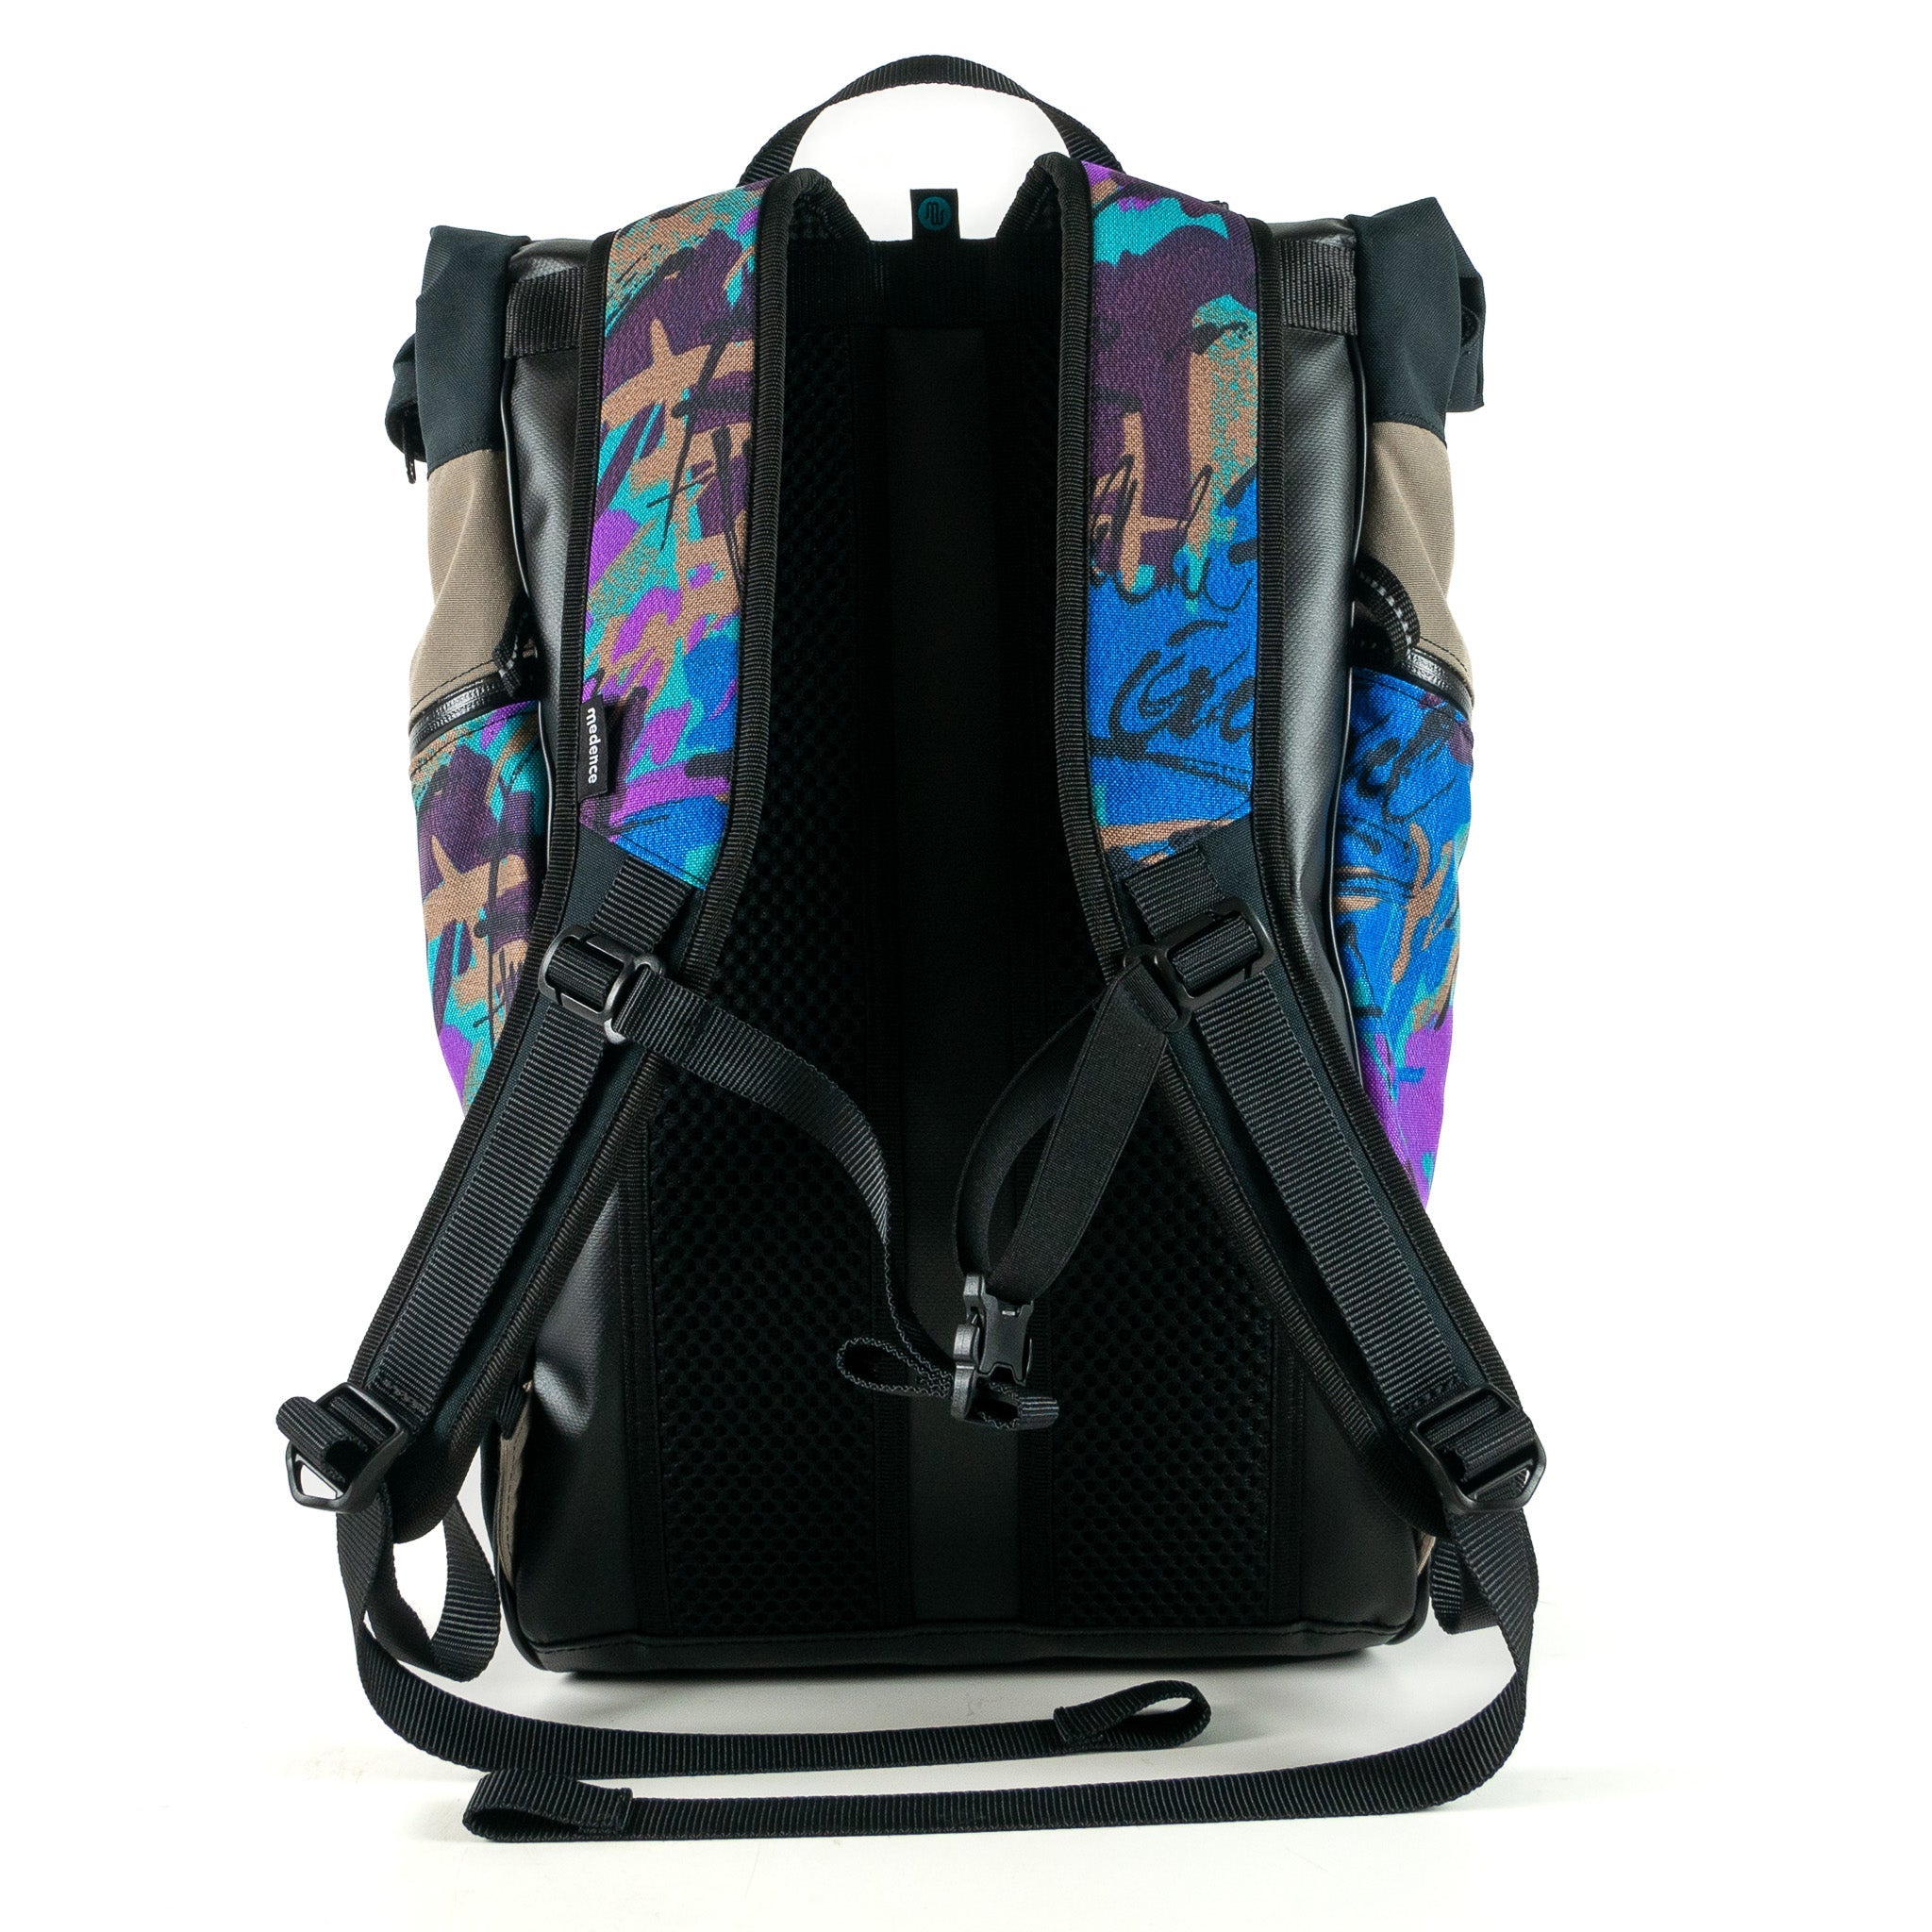 Backpack - BUD Light No. 099 - Backpacks - medencebag